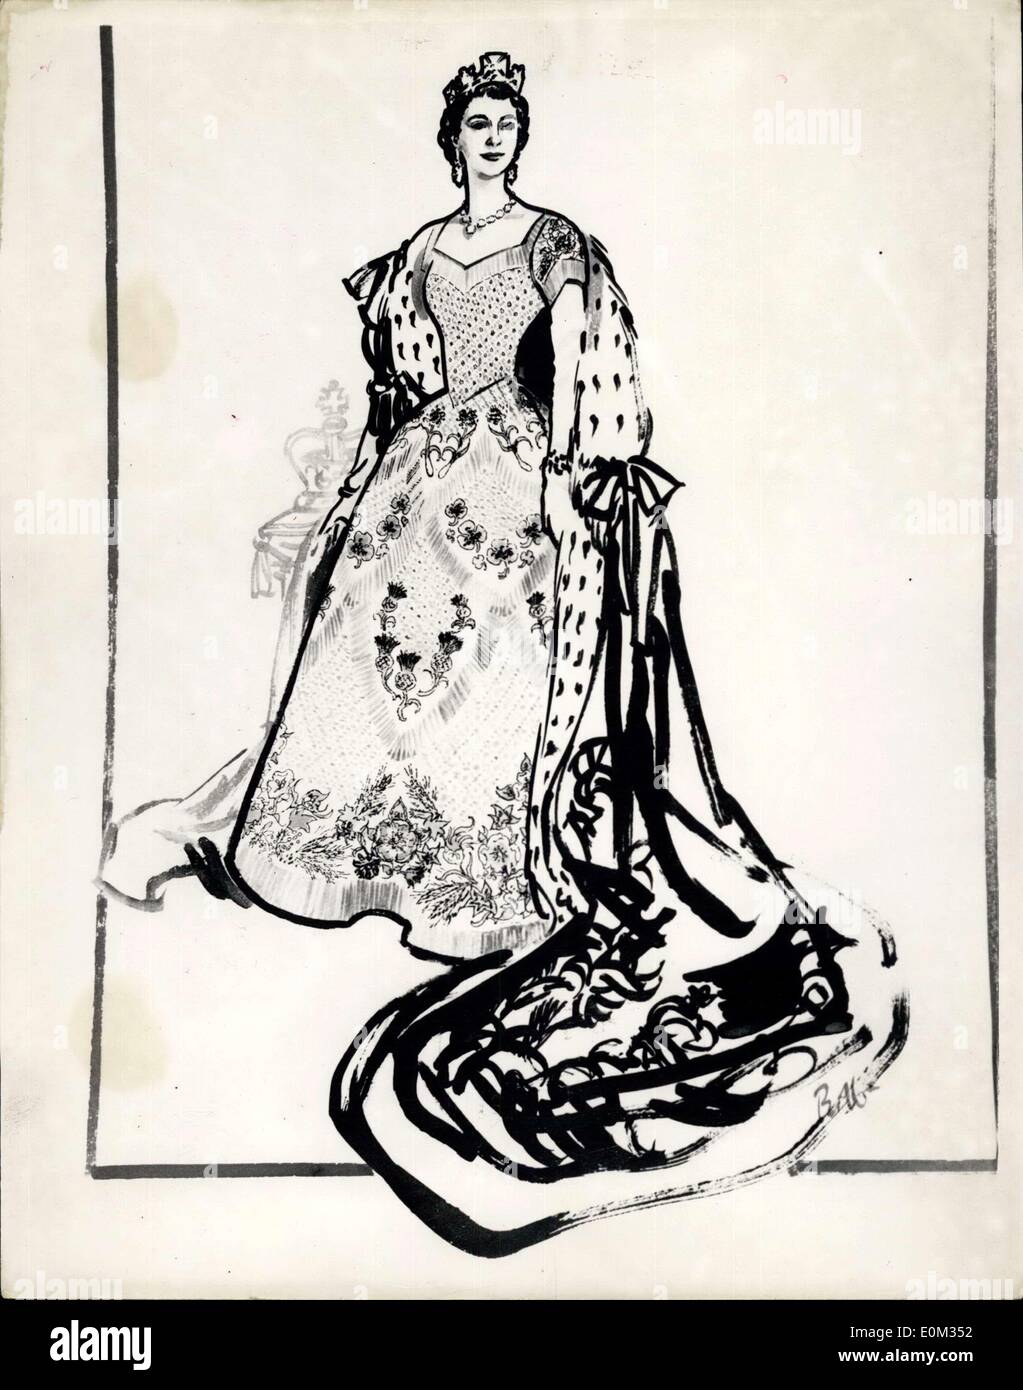 1. Juni 1953 - Skizzen für die Königskrönung Kleider... Schwarz-Weiß-Zeichnung der Königin Kleid: Skizzen der Kleider - Schuhe etc... Das sind von HM The Queen, Prinzessin Margaret, Königin-Mutter etc. getragen werden... waren heute zu sehen. Foto zeigt: Eine schwarz-weiß Zeichnung des Kleides Hartnell heißt von HM The Queen umfasst auch die Krönungsrobe getragen werden. Stockfoto